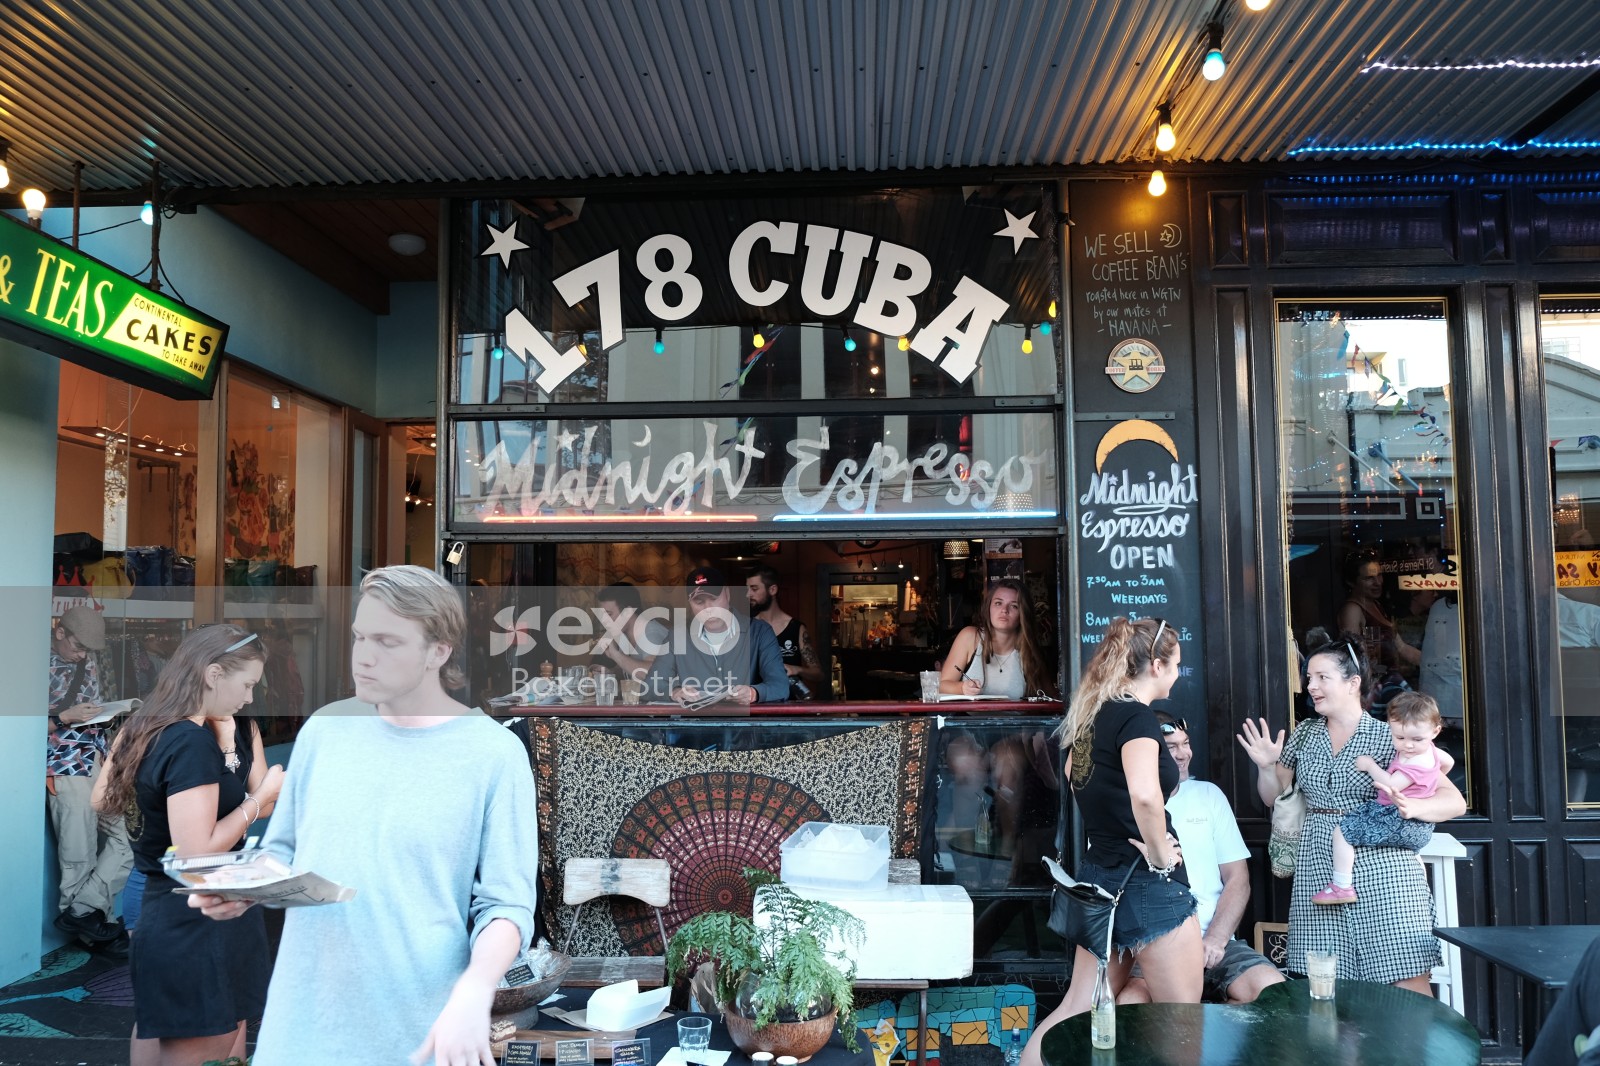 Cuba street eatery